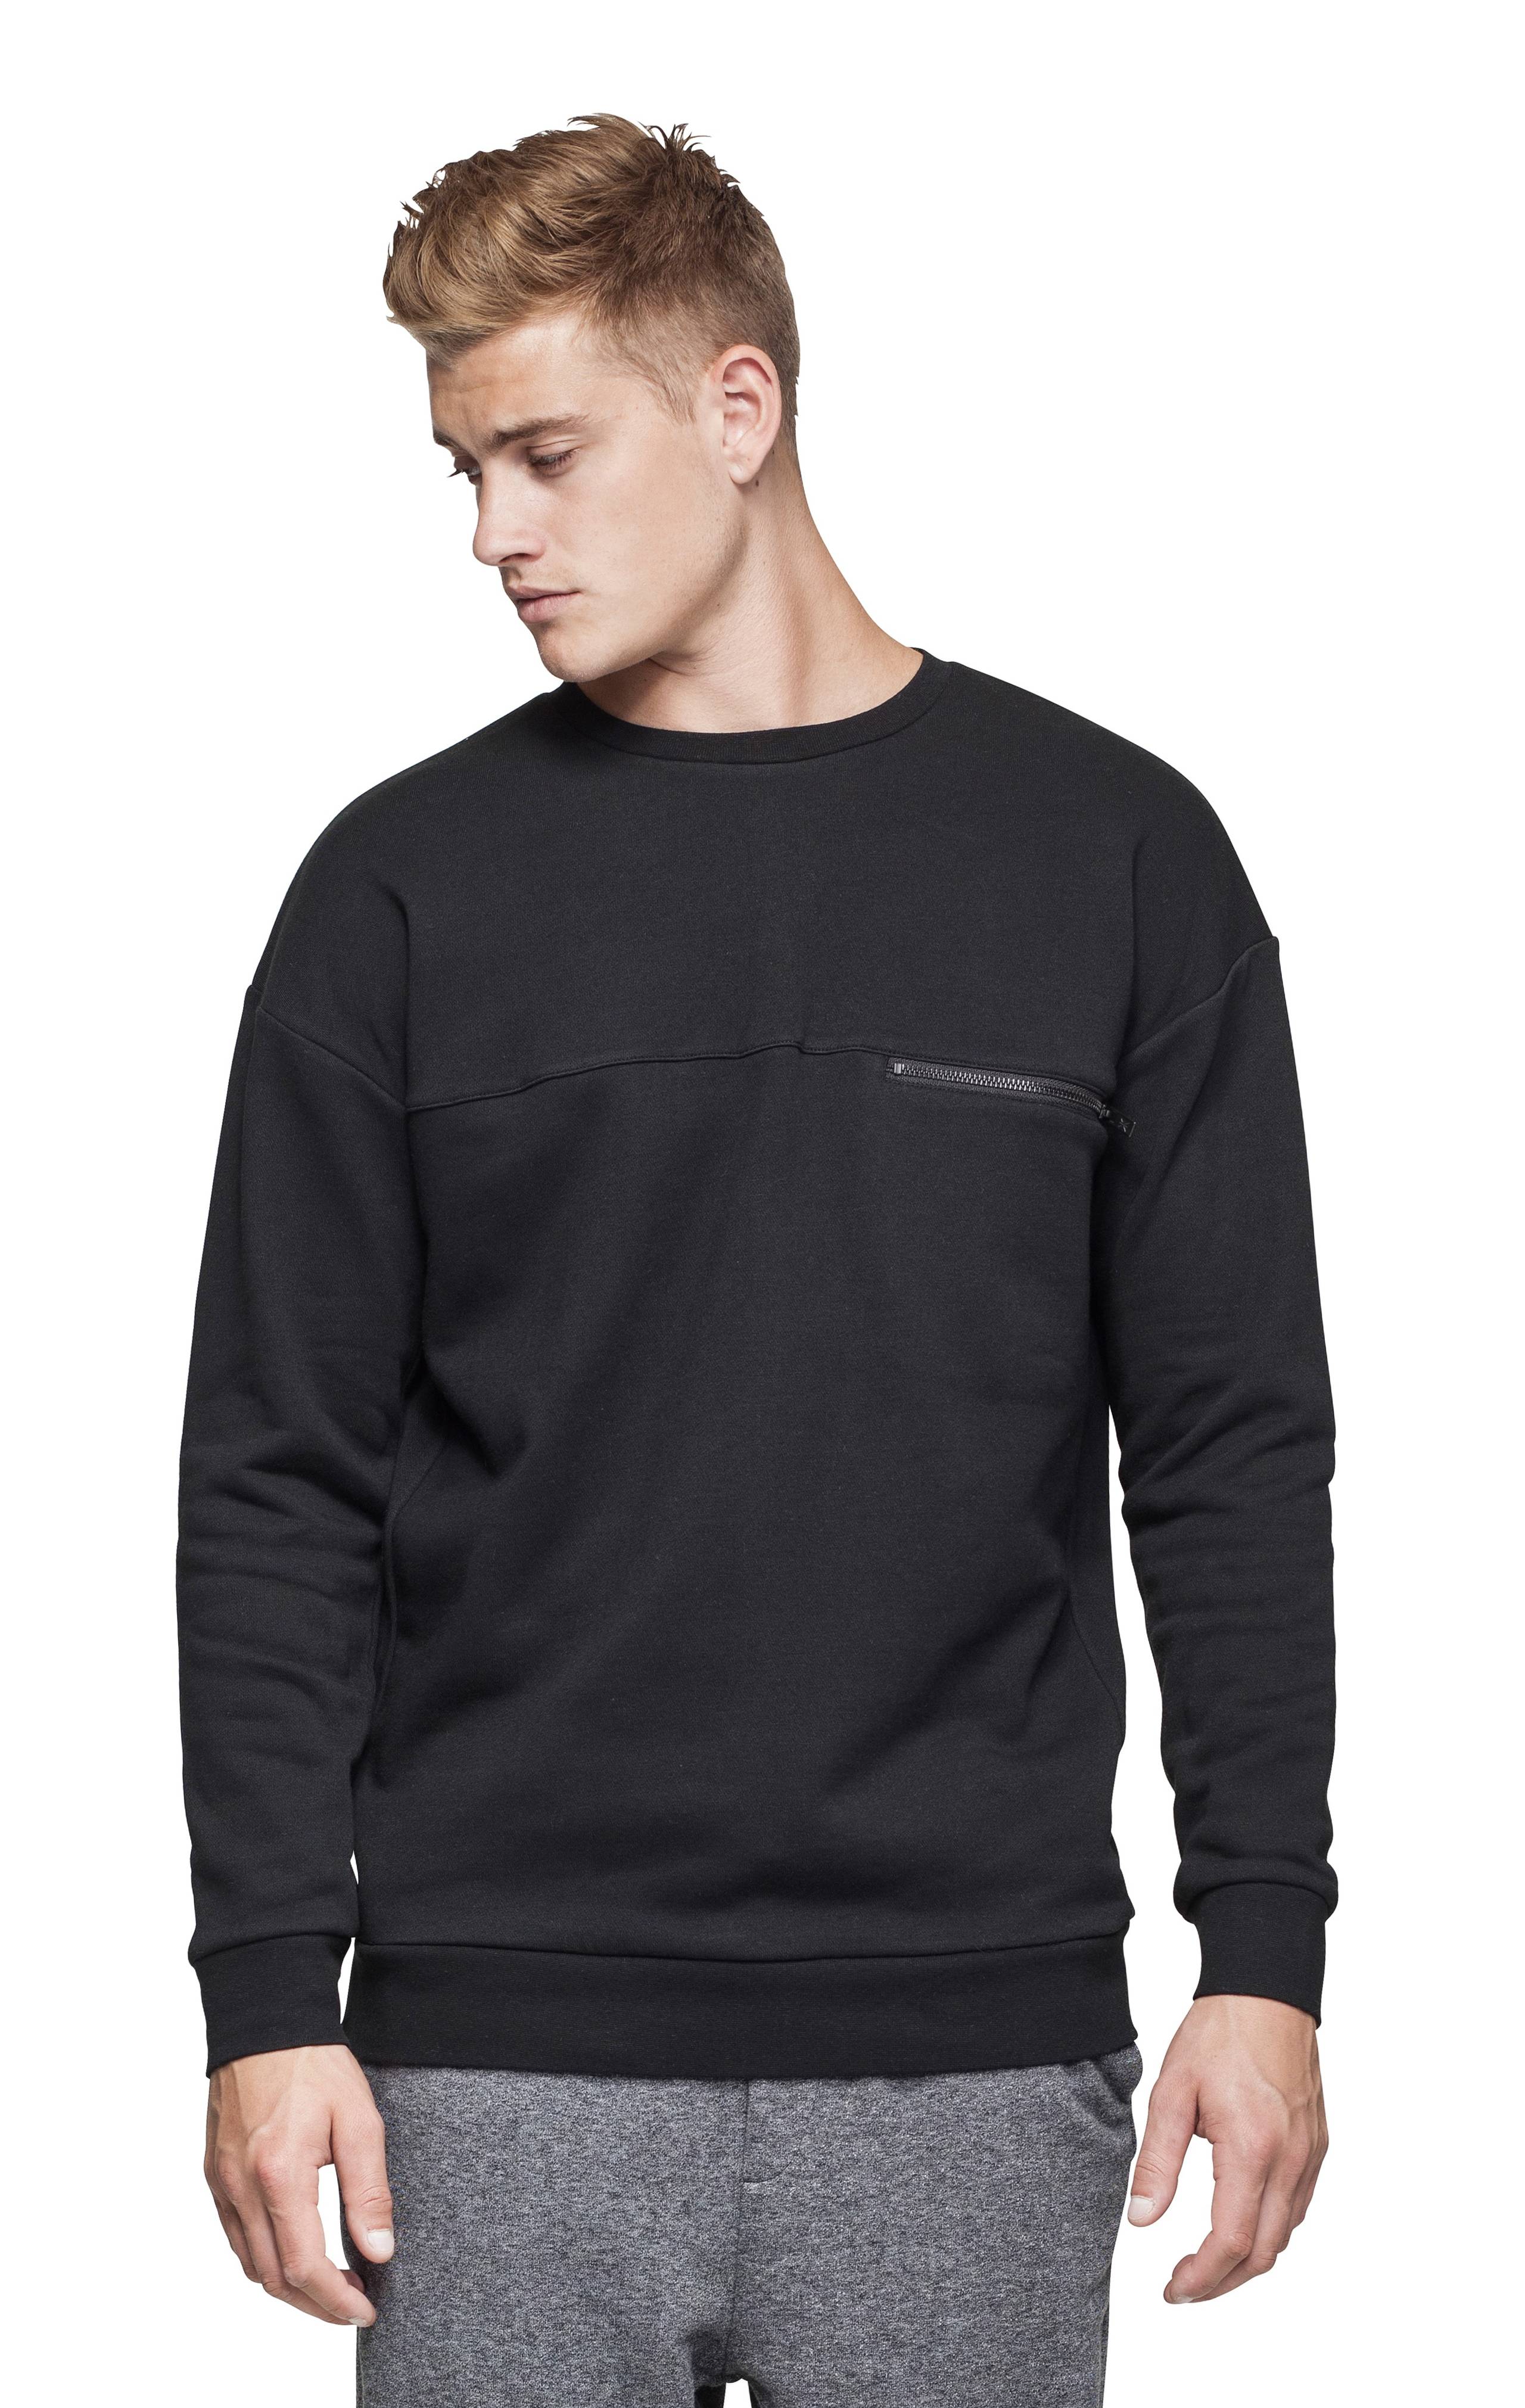 Onepiece Plunge Sweater Black - 2